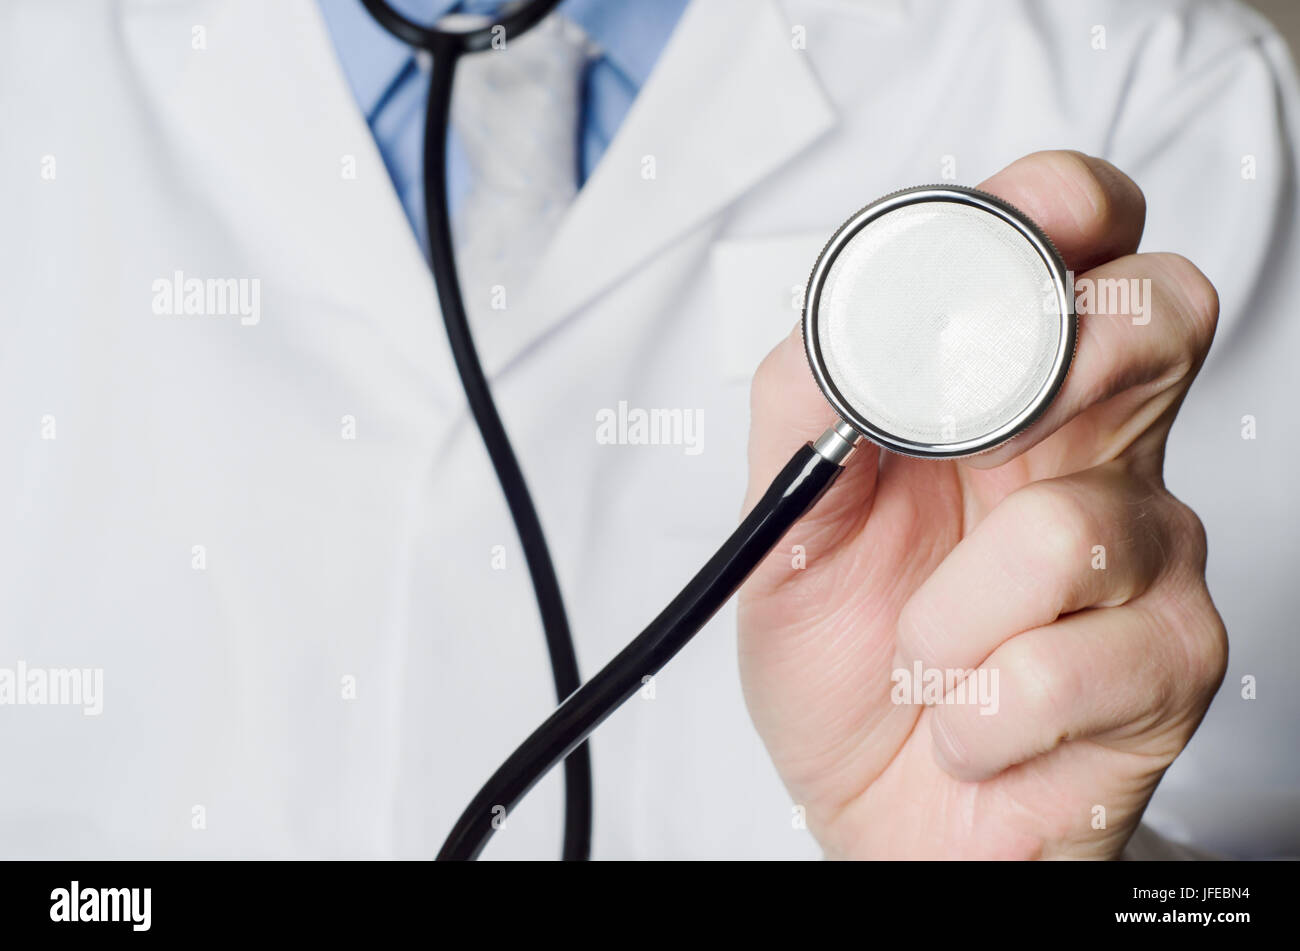 Nahaufnahme eines Arztes Hand, halten ein Stethoskop ausgestreckt auf den Betrachter.  Weißen Arztkittel Eingabefeld auf der linken Seite des Rahmens. Stockfoto